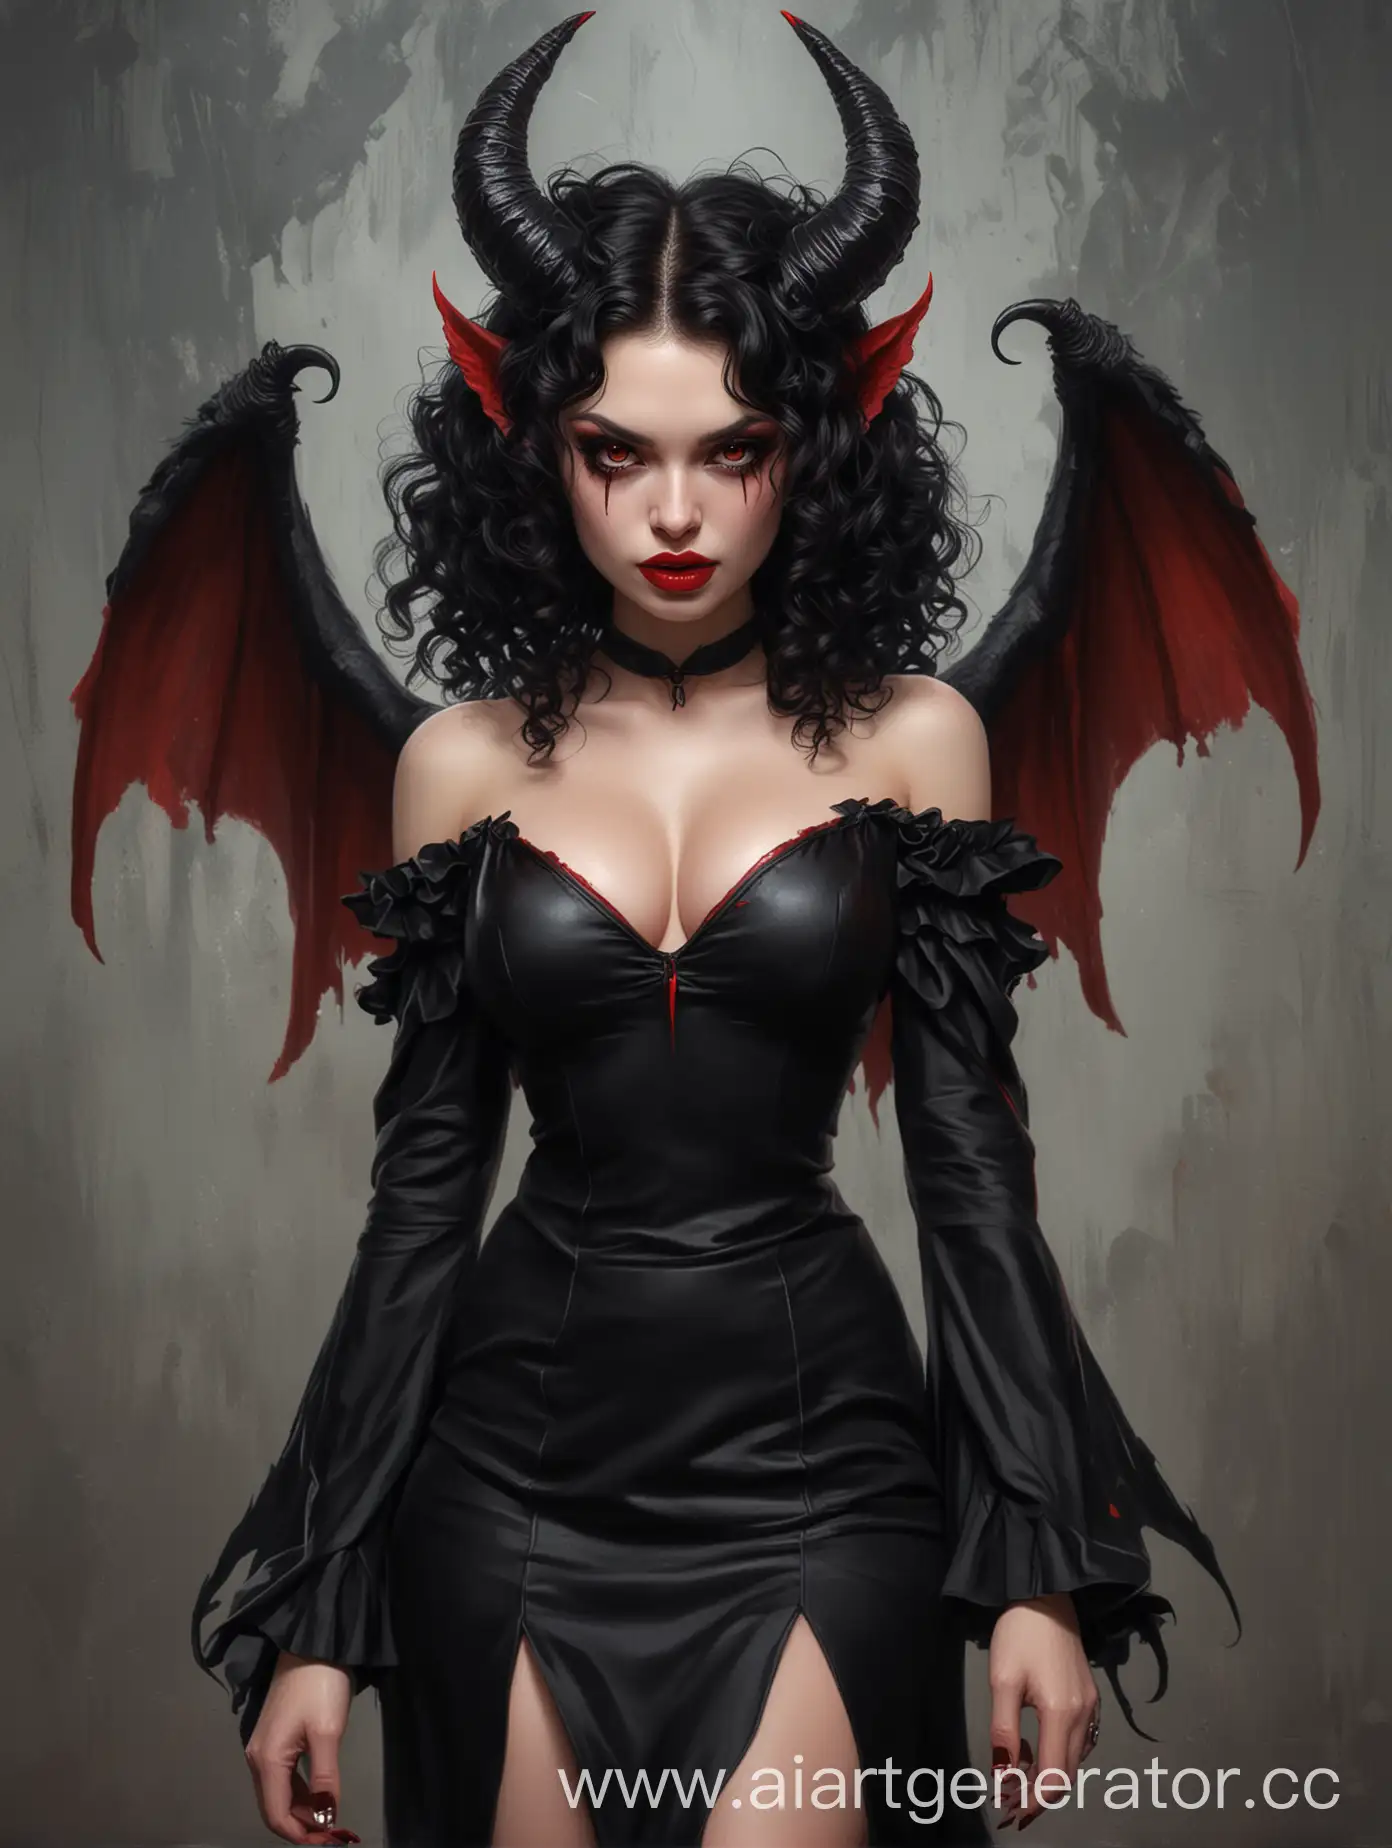 девушка демон с двумя черно-красными острыми крыльями. в чёрном платье с декольте. черные вьющиеся волосы и большие красные рога. голова прямо. Красные губы. dnd